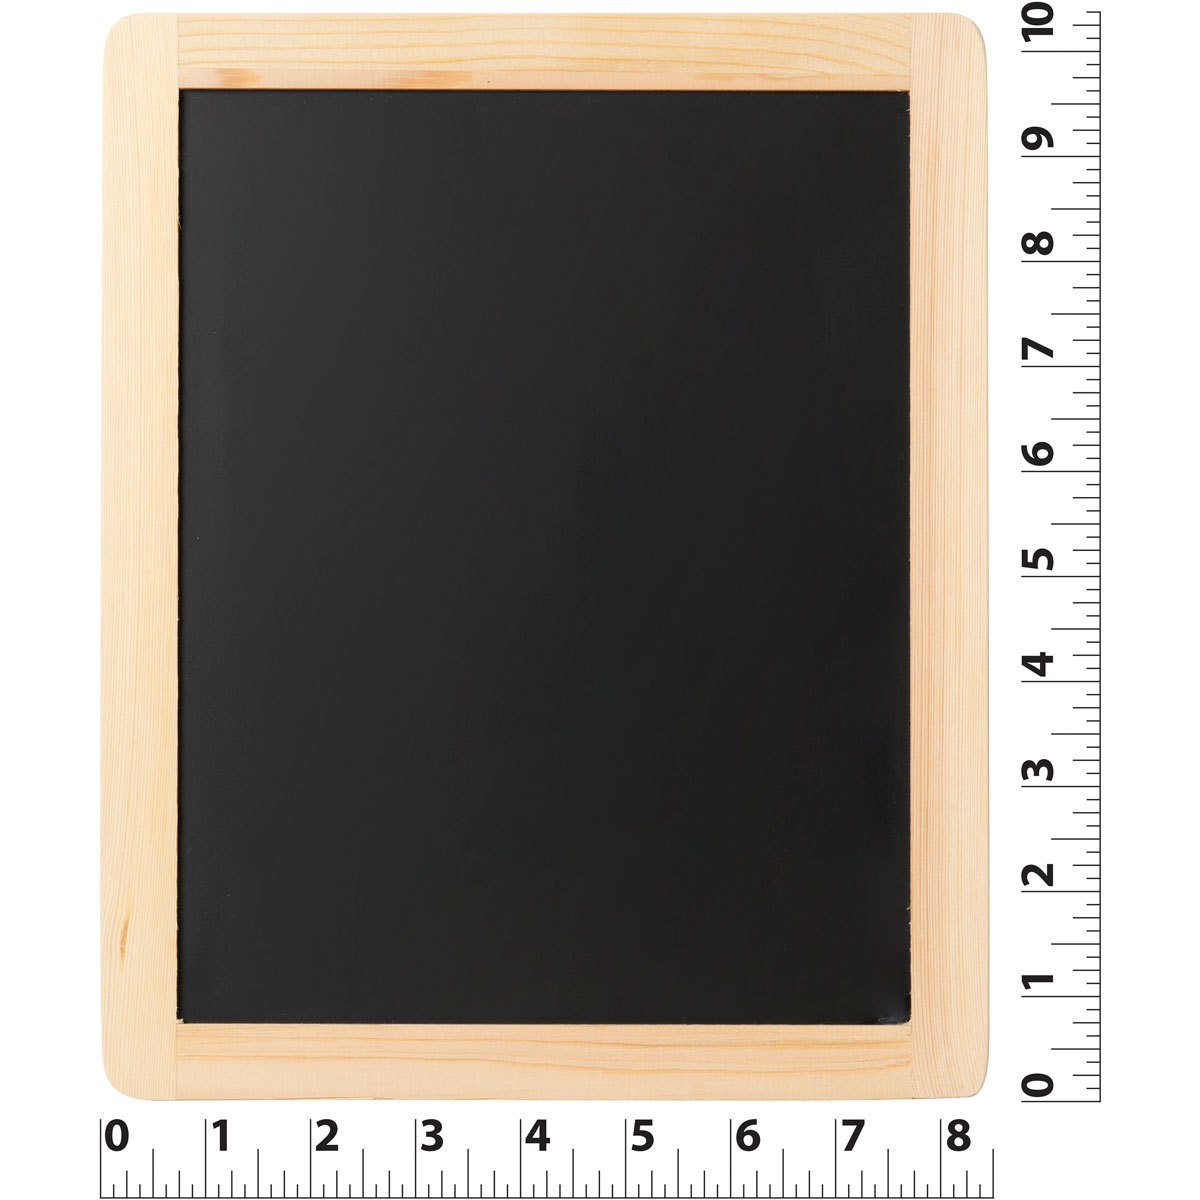 Plaid ® Wood Surfaces - Chalkboard Frame Bundle, 6 pieces - 96382